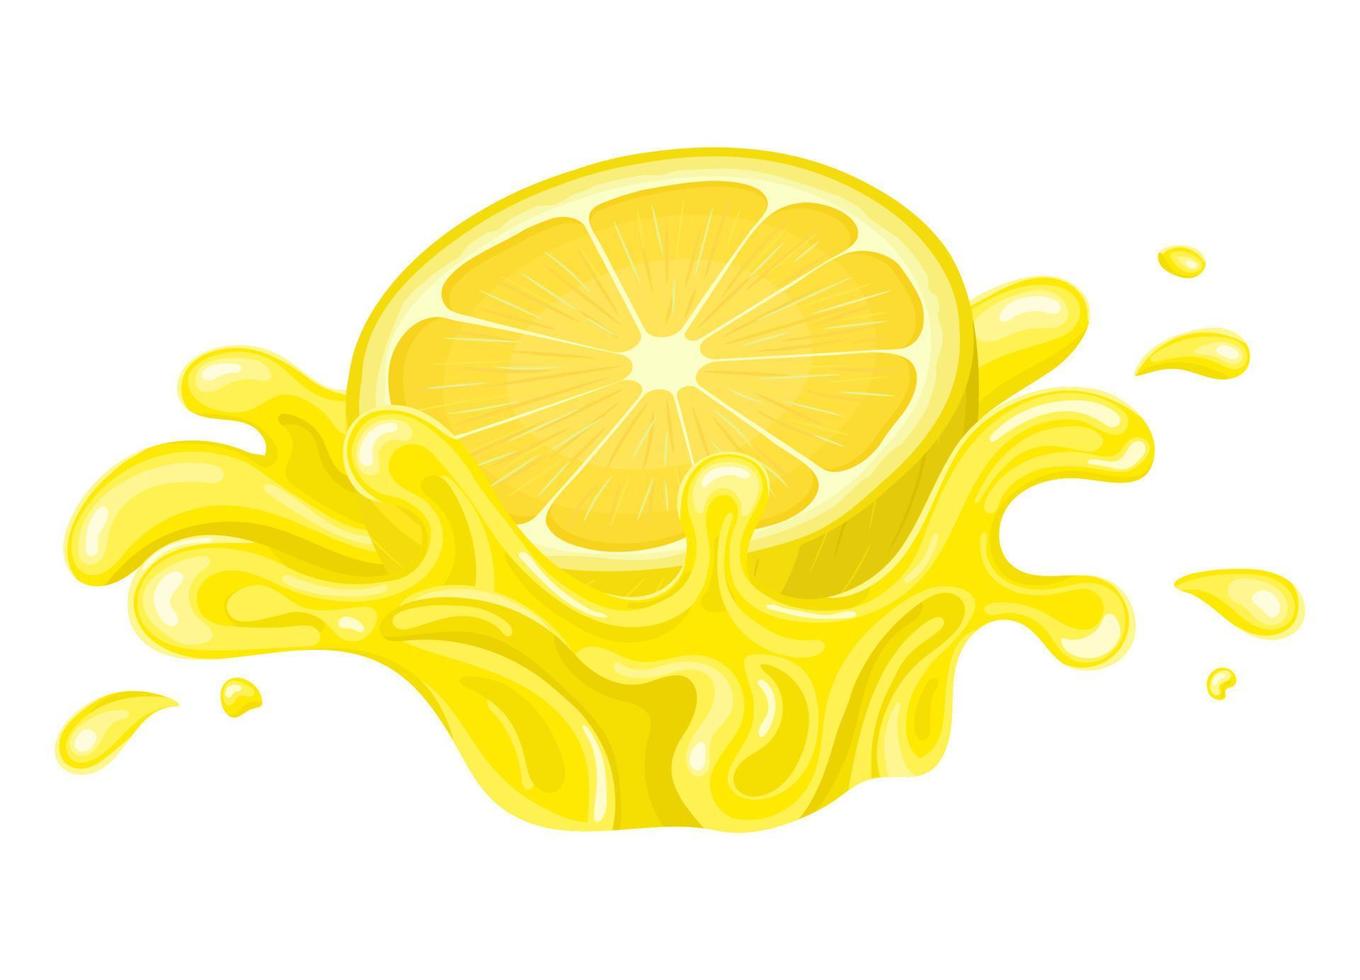 verse heldere half gesneden citroensap splash burst geïsoleerd op een witte achtergrond. zomer vruchtensap. cartoon-stijl. vectorillustratie voor elk ontwerp. vector